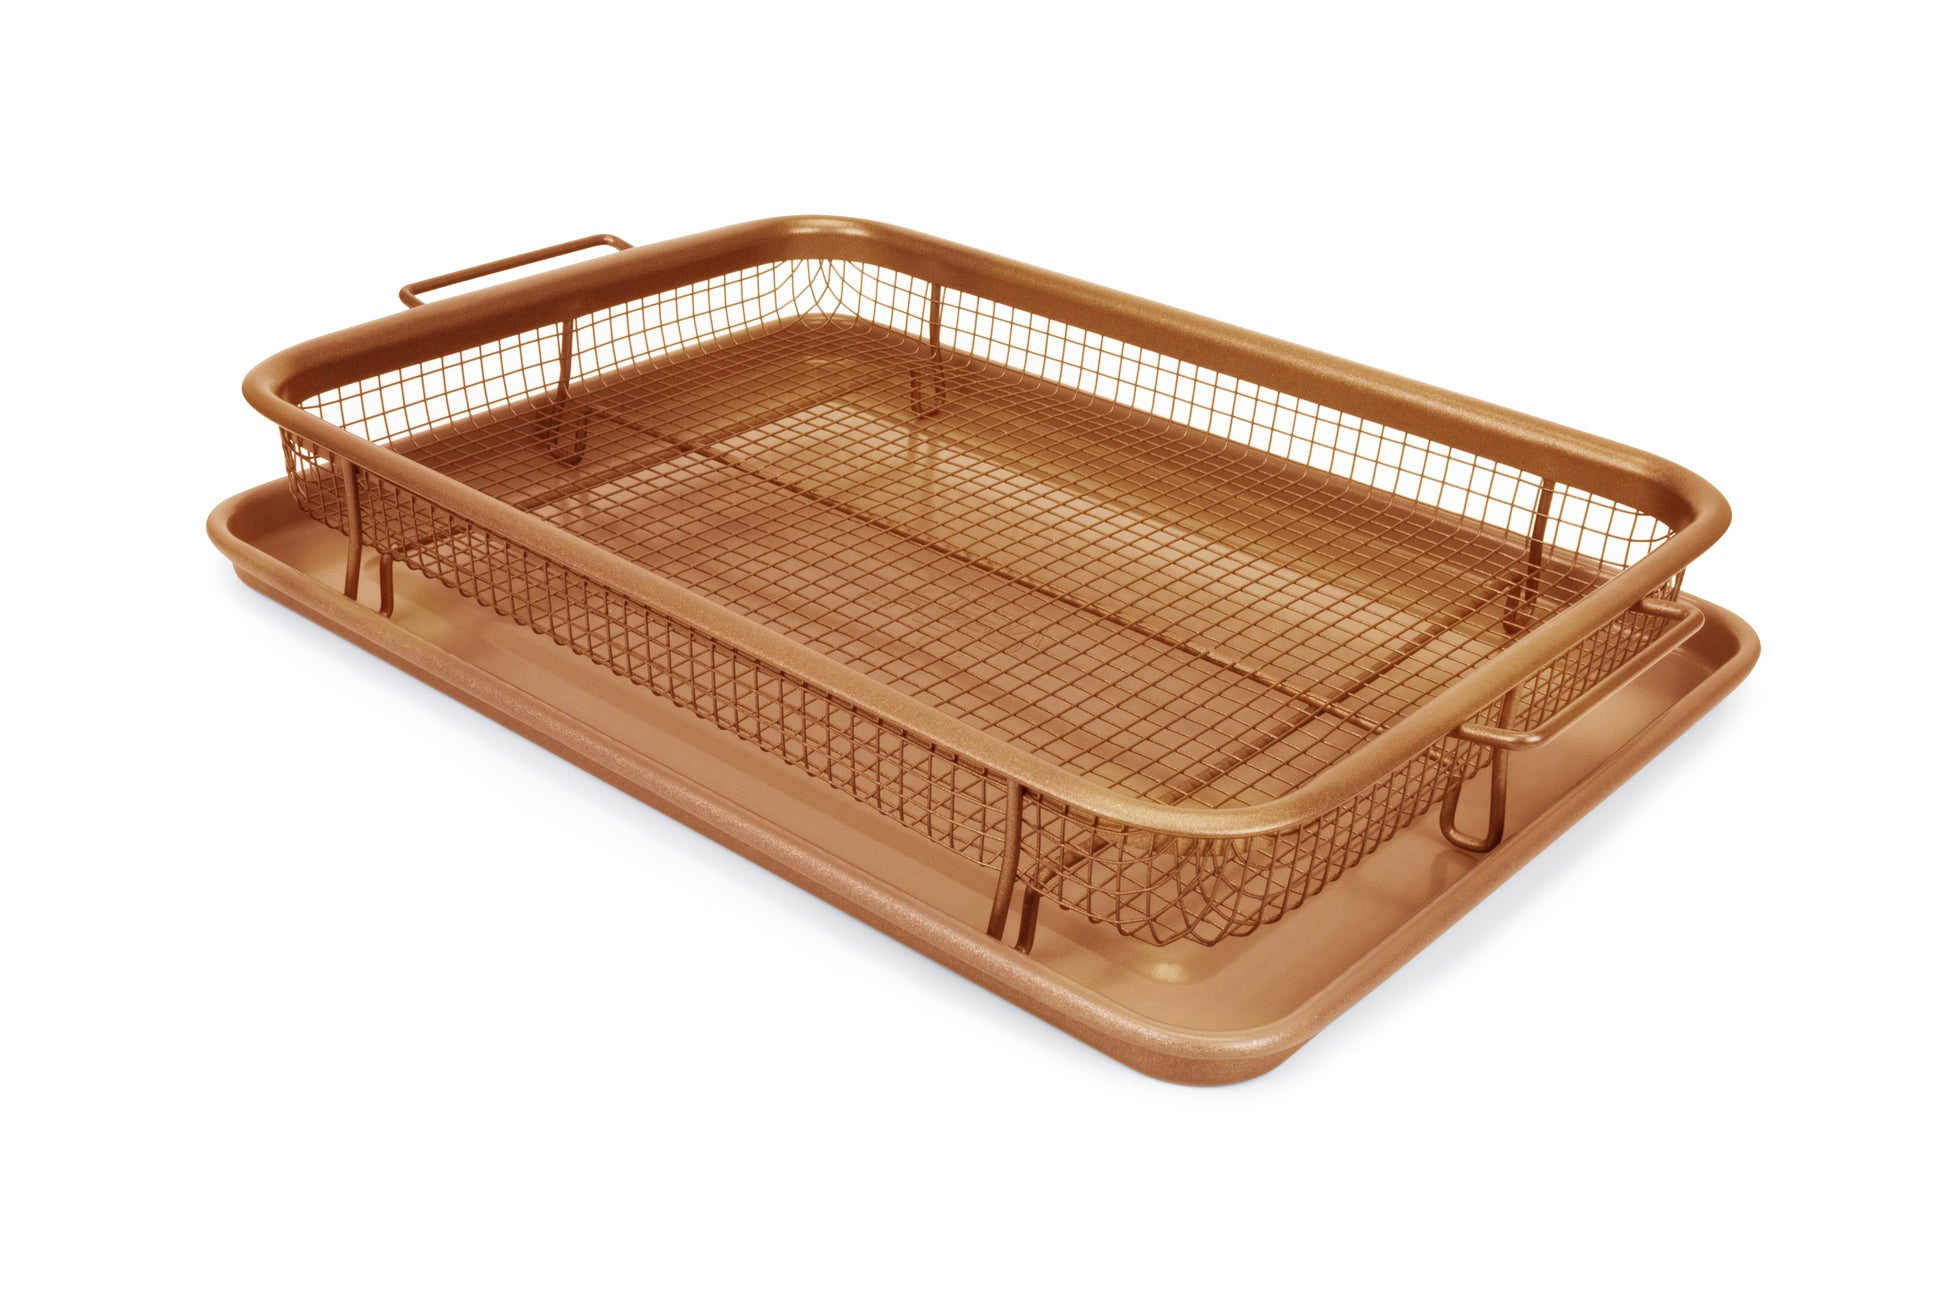 Air Fryer Basket &Tray Set For Oven Crisper Tray Copper Dishwasher